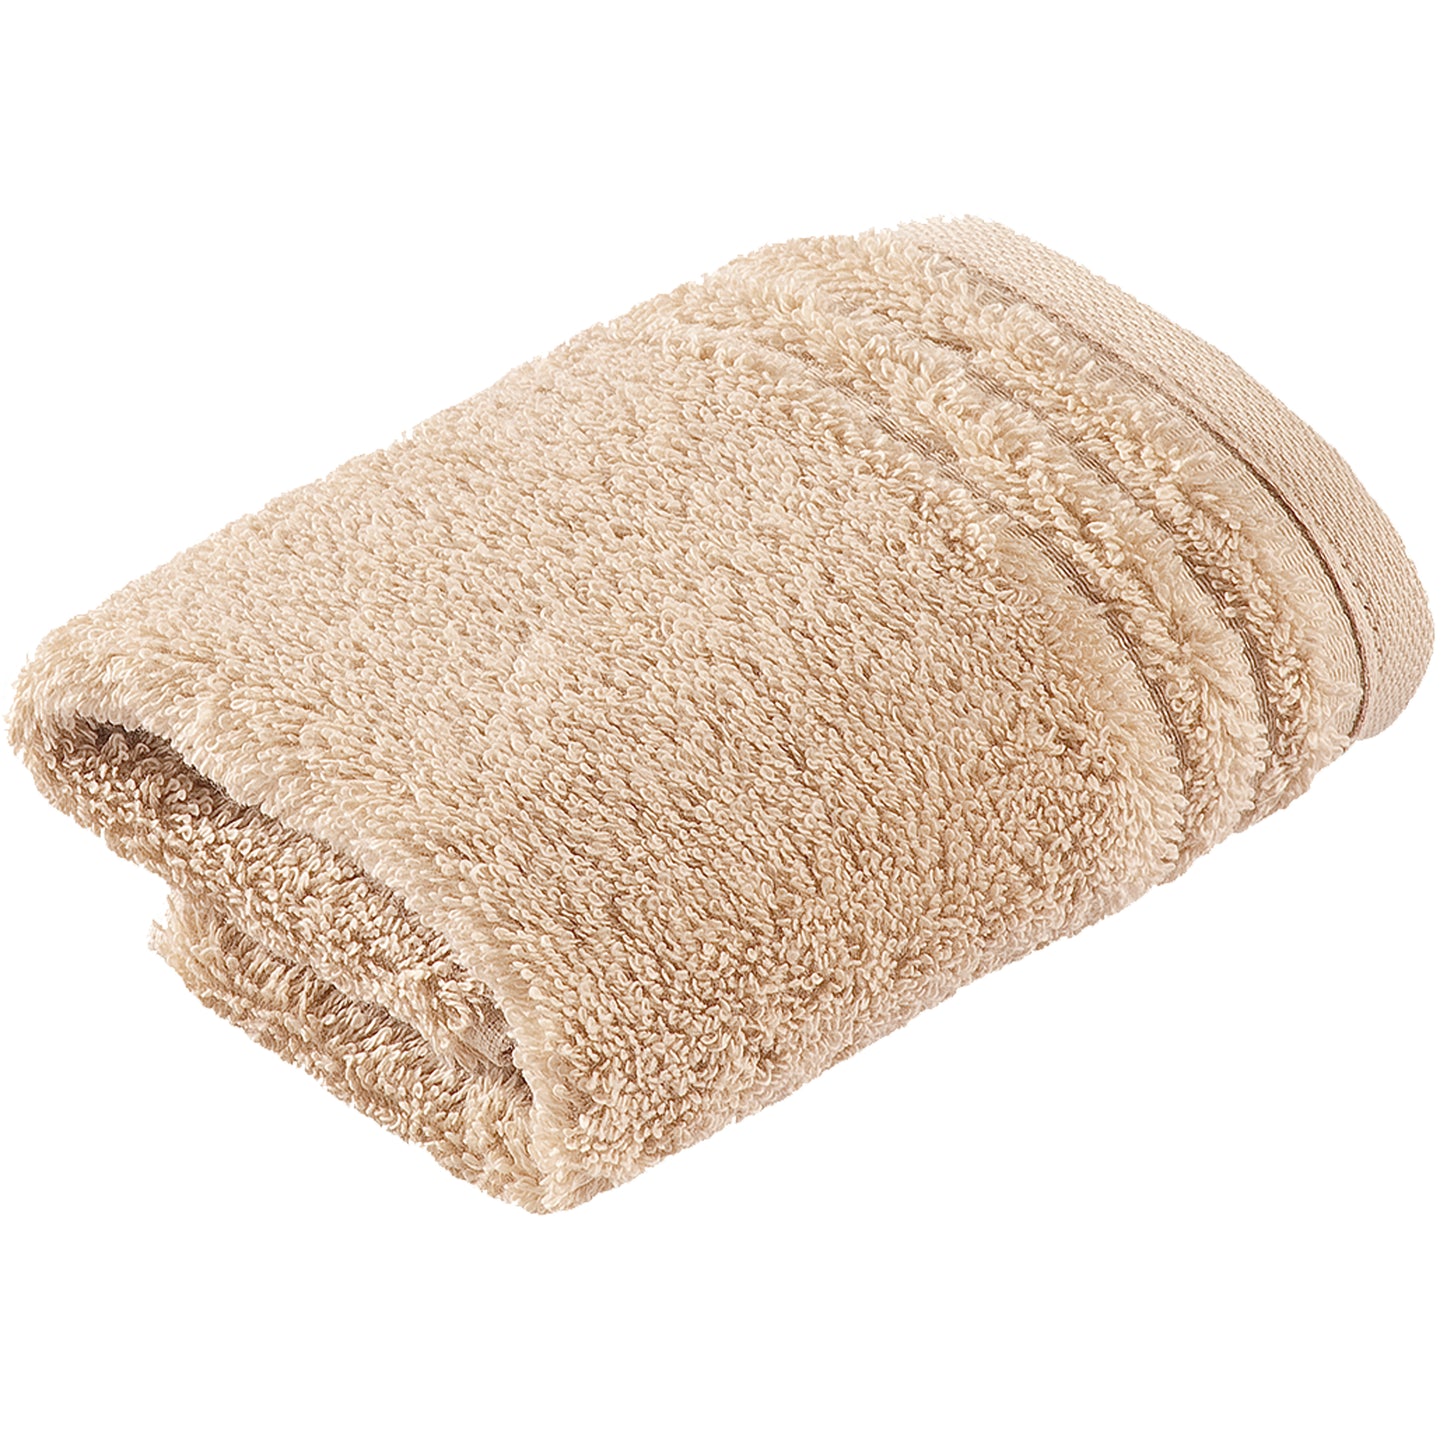 Ręcznik z bawełny organicznej Vienna Style tibet